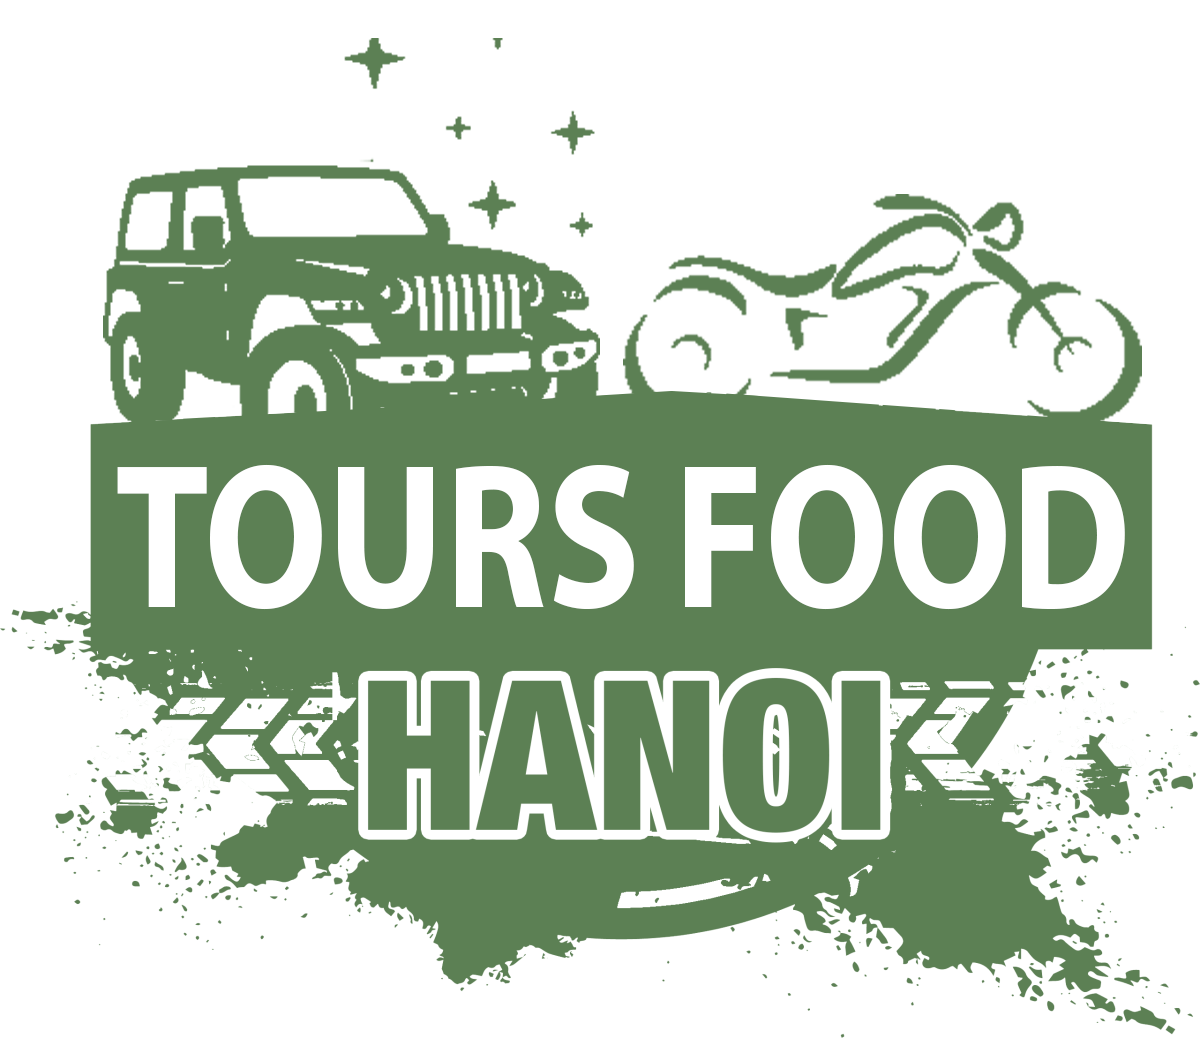 Tours Food Hanoi – Hanoi Food Tours